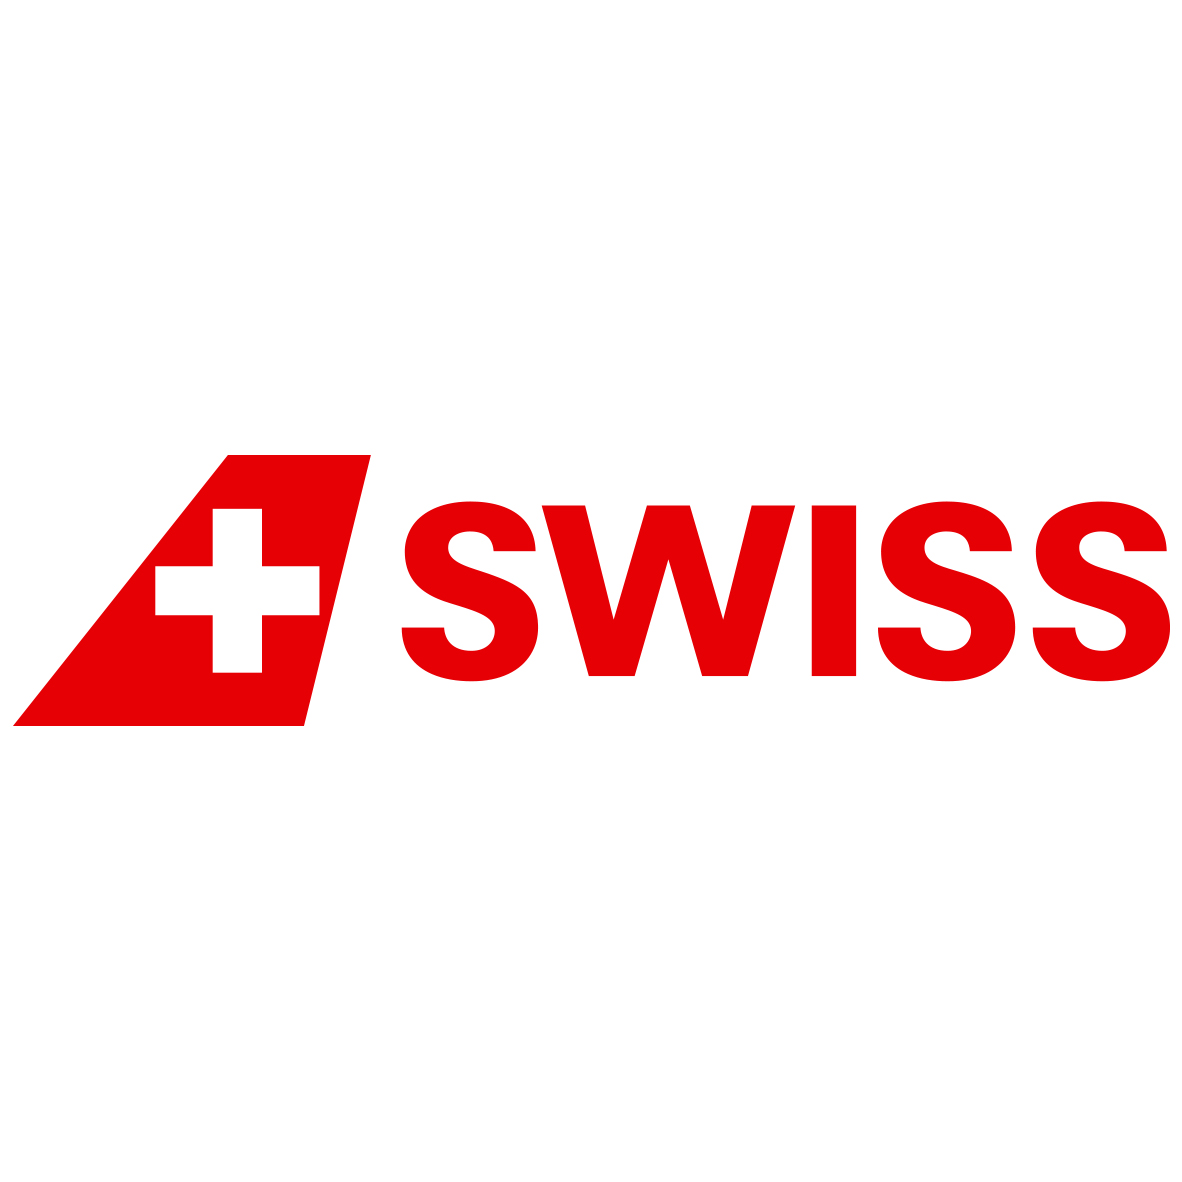 Swiss_logo.jpg